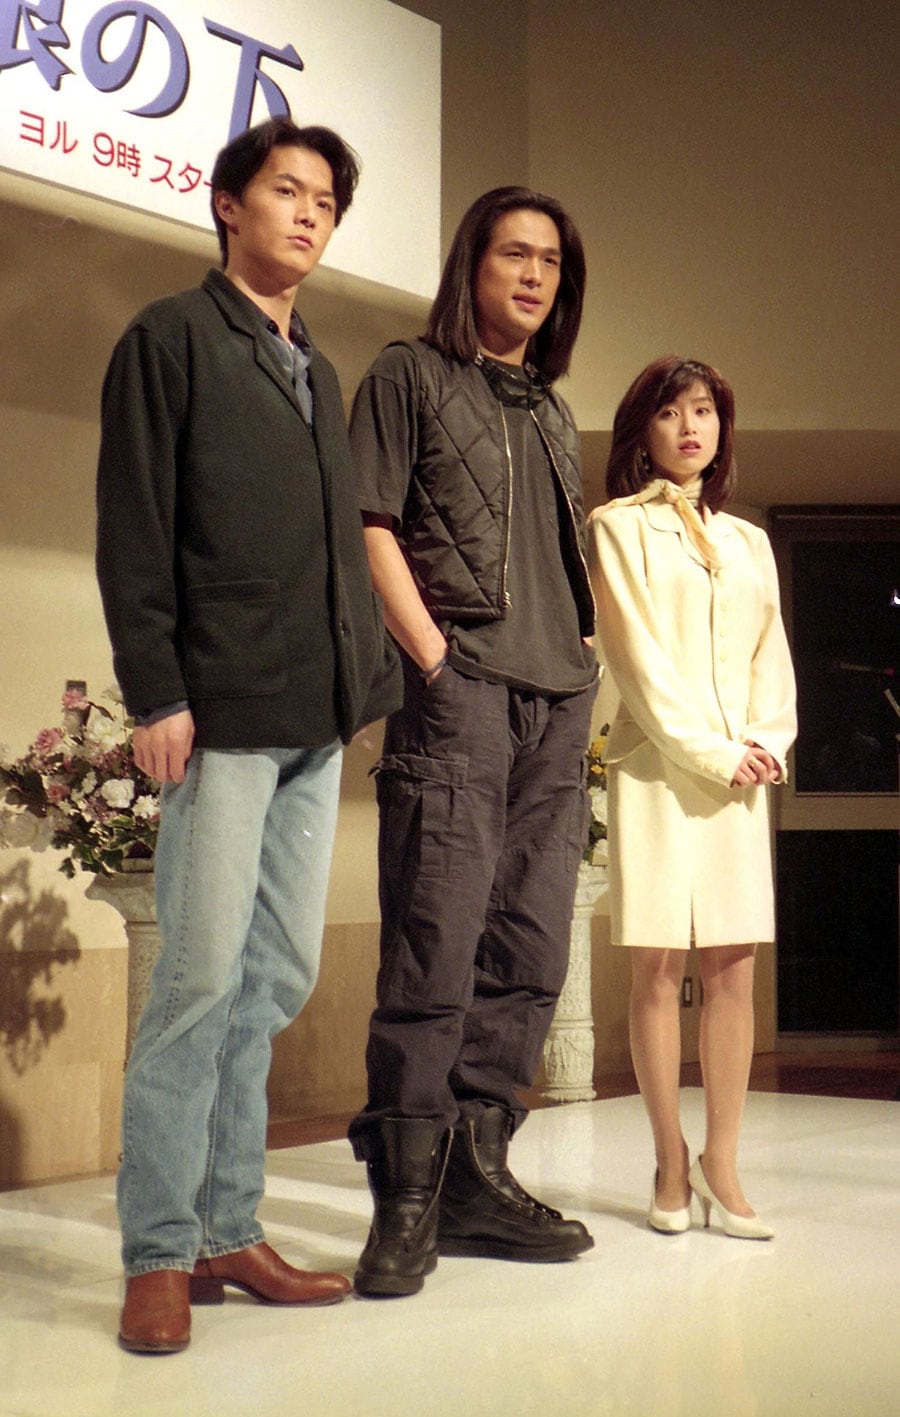 「ひとつ屋根の下」(フジテレビ系)の制作発表で(1993年)。江口洋介、酒井法子と。